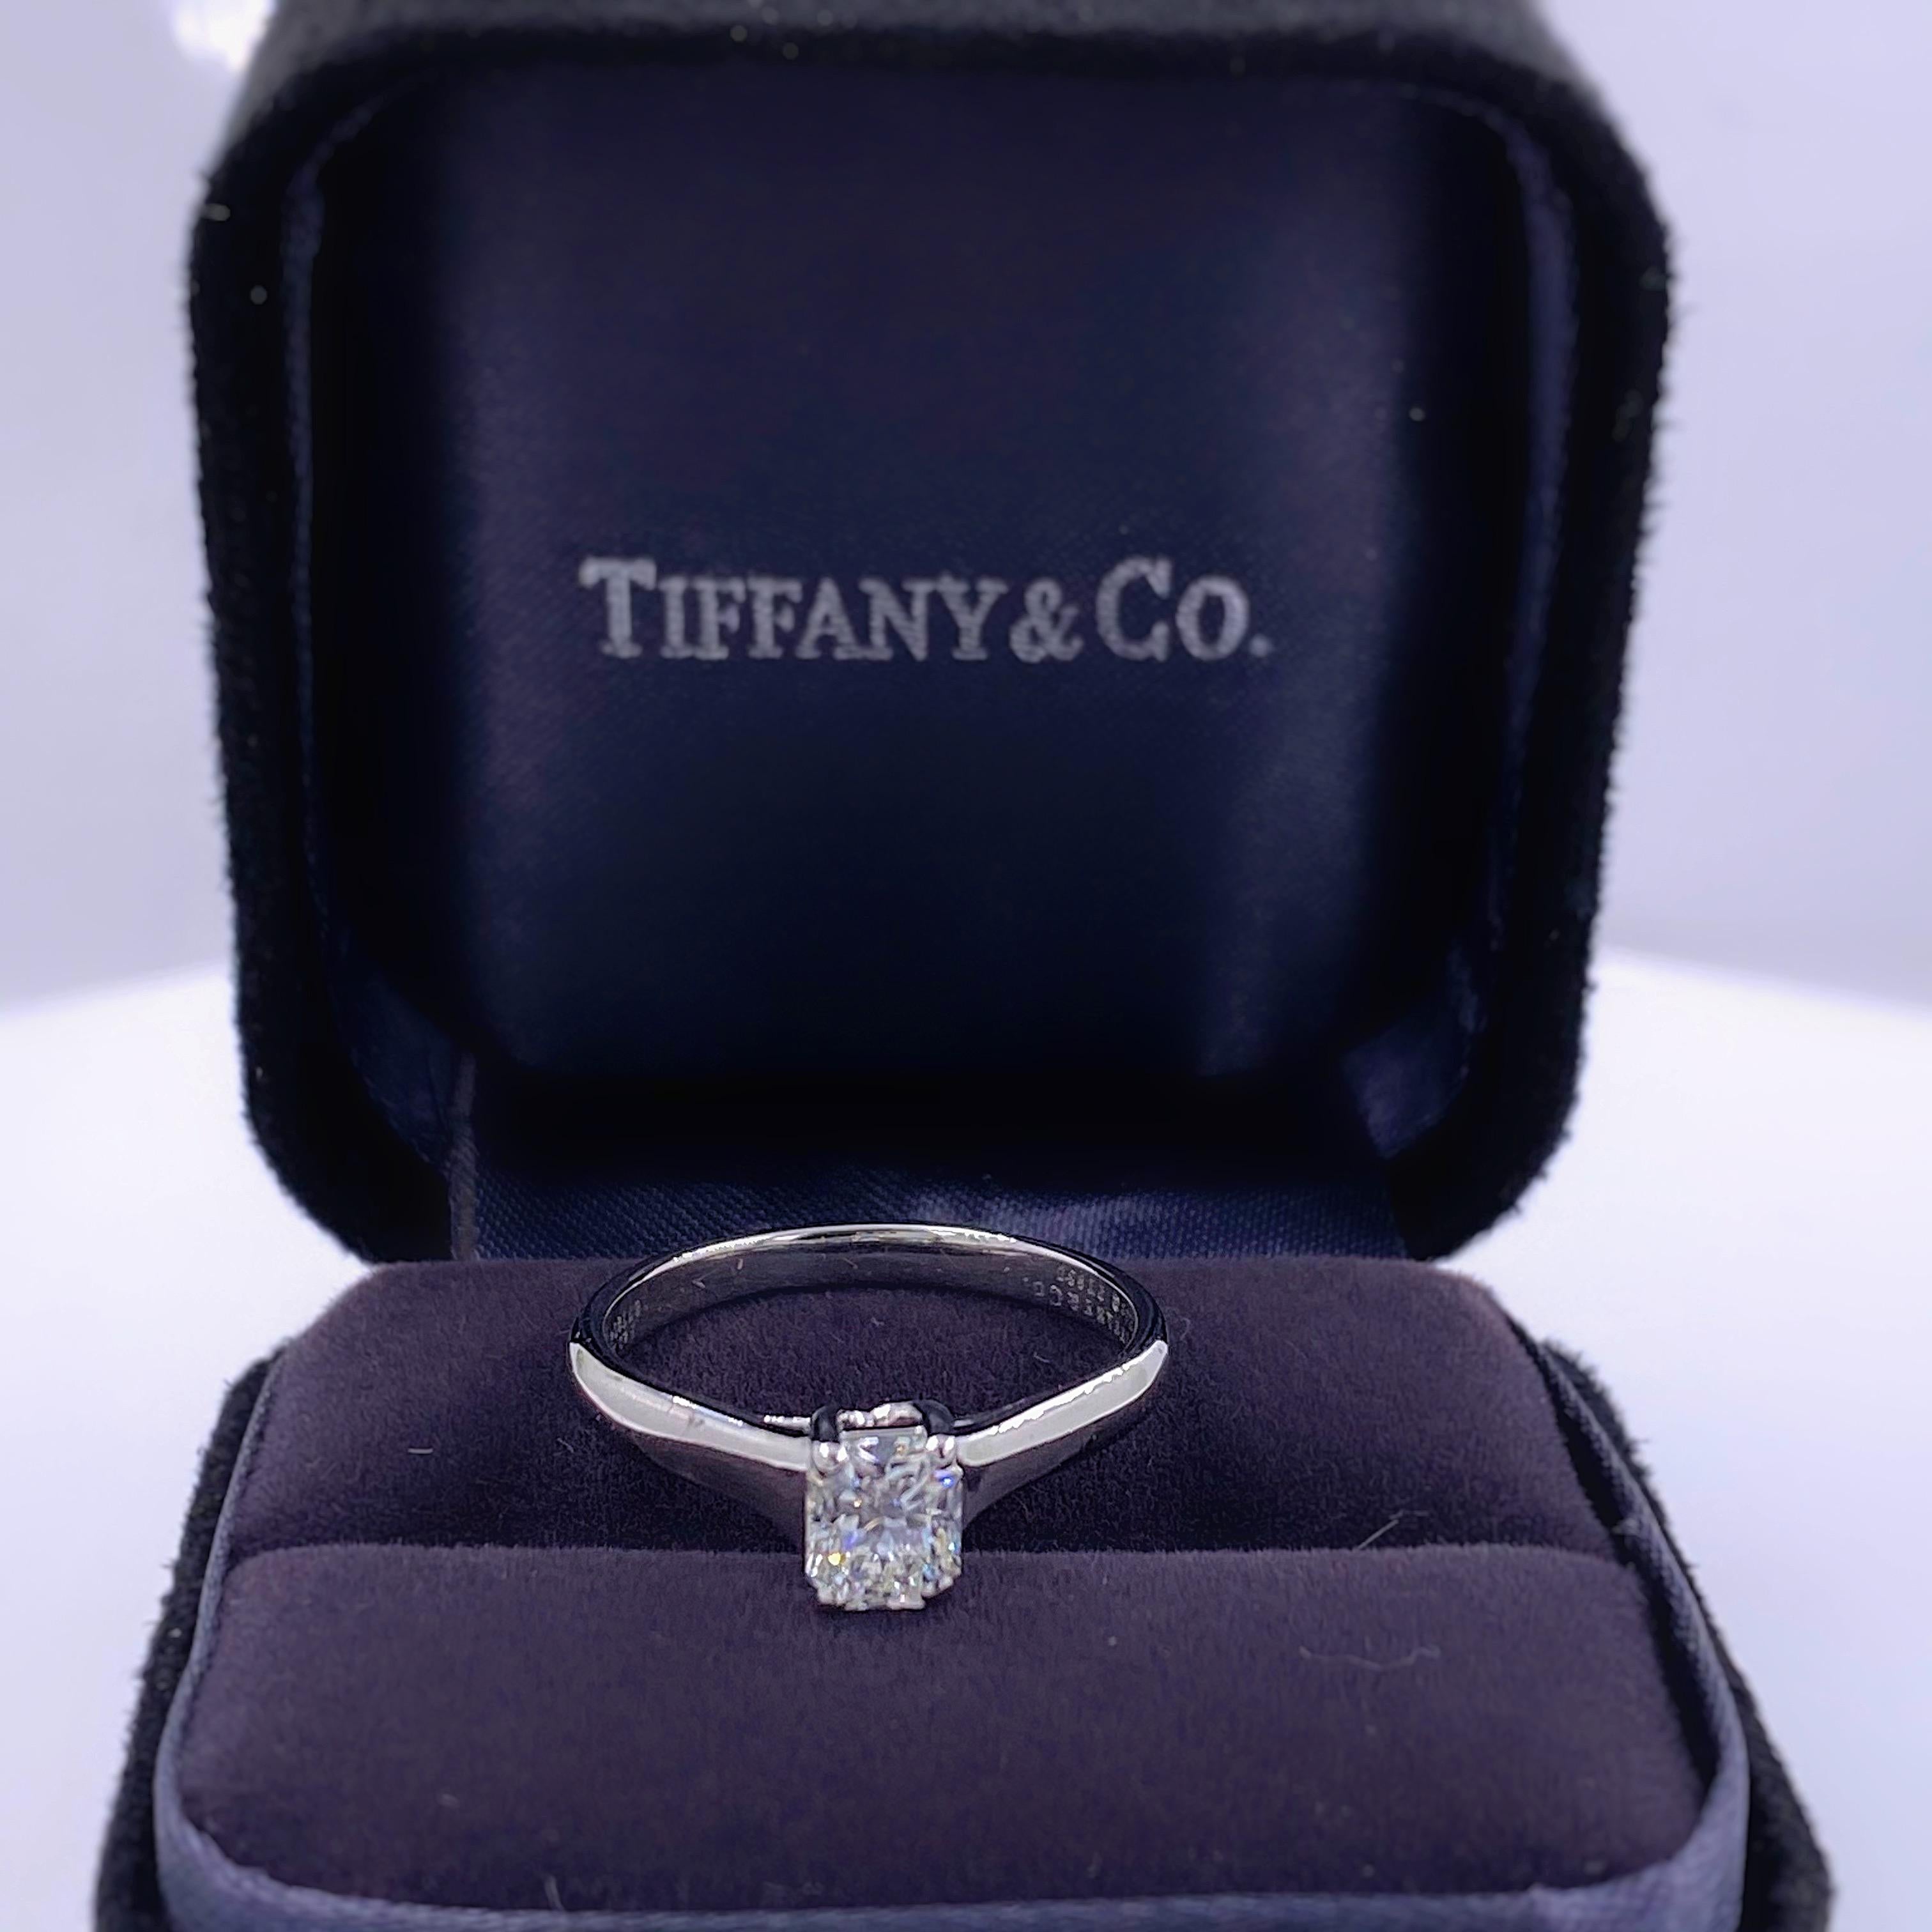 tiffany 0.3 carat ring